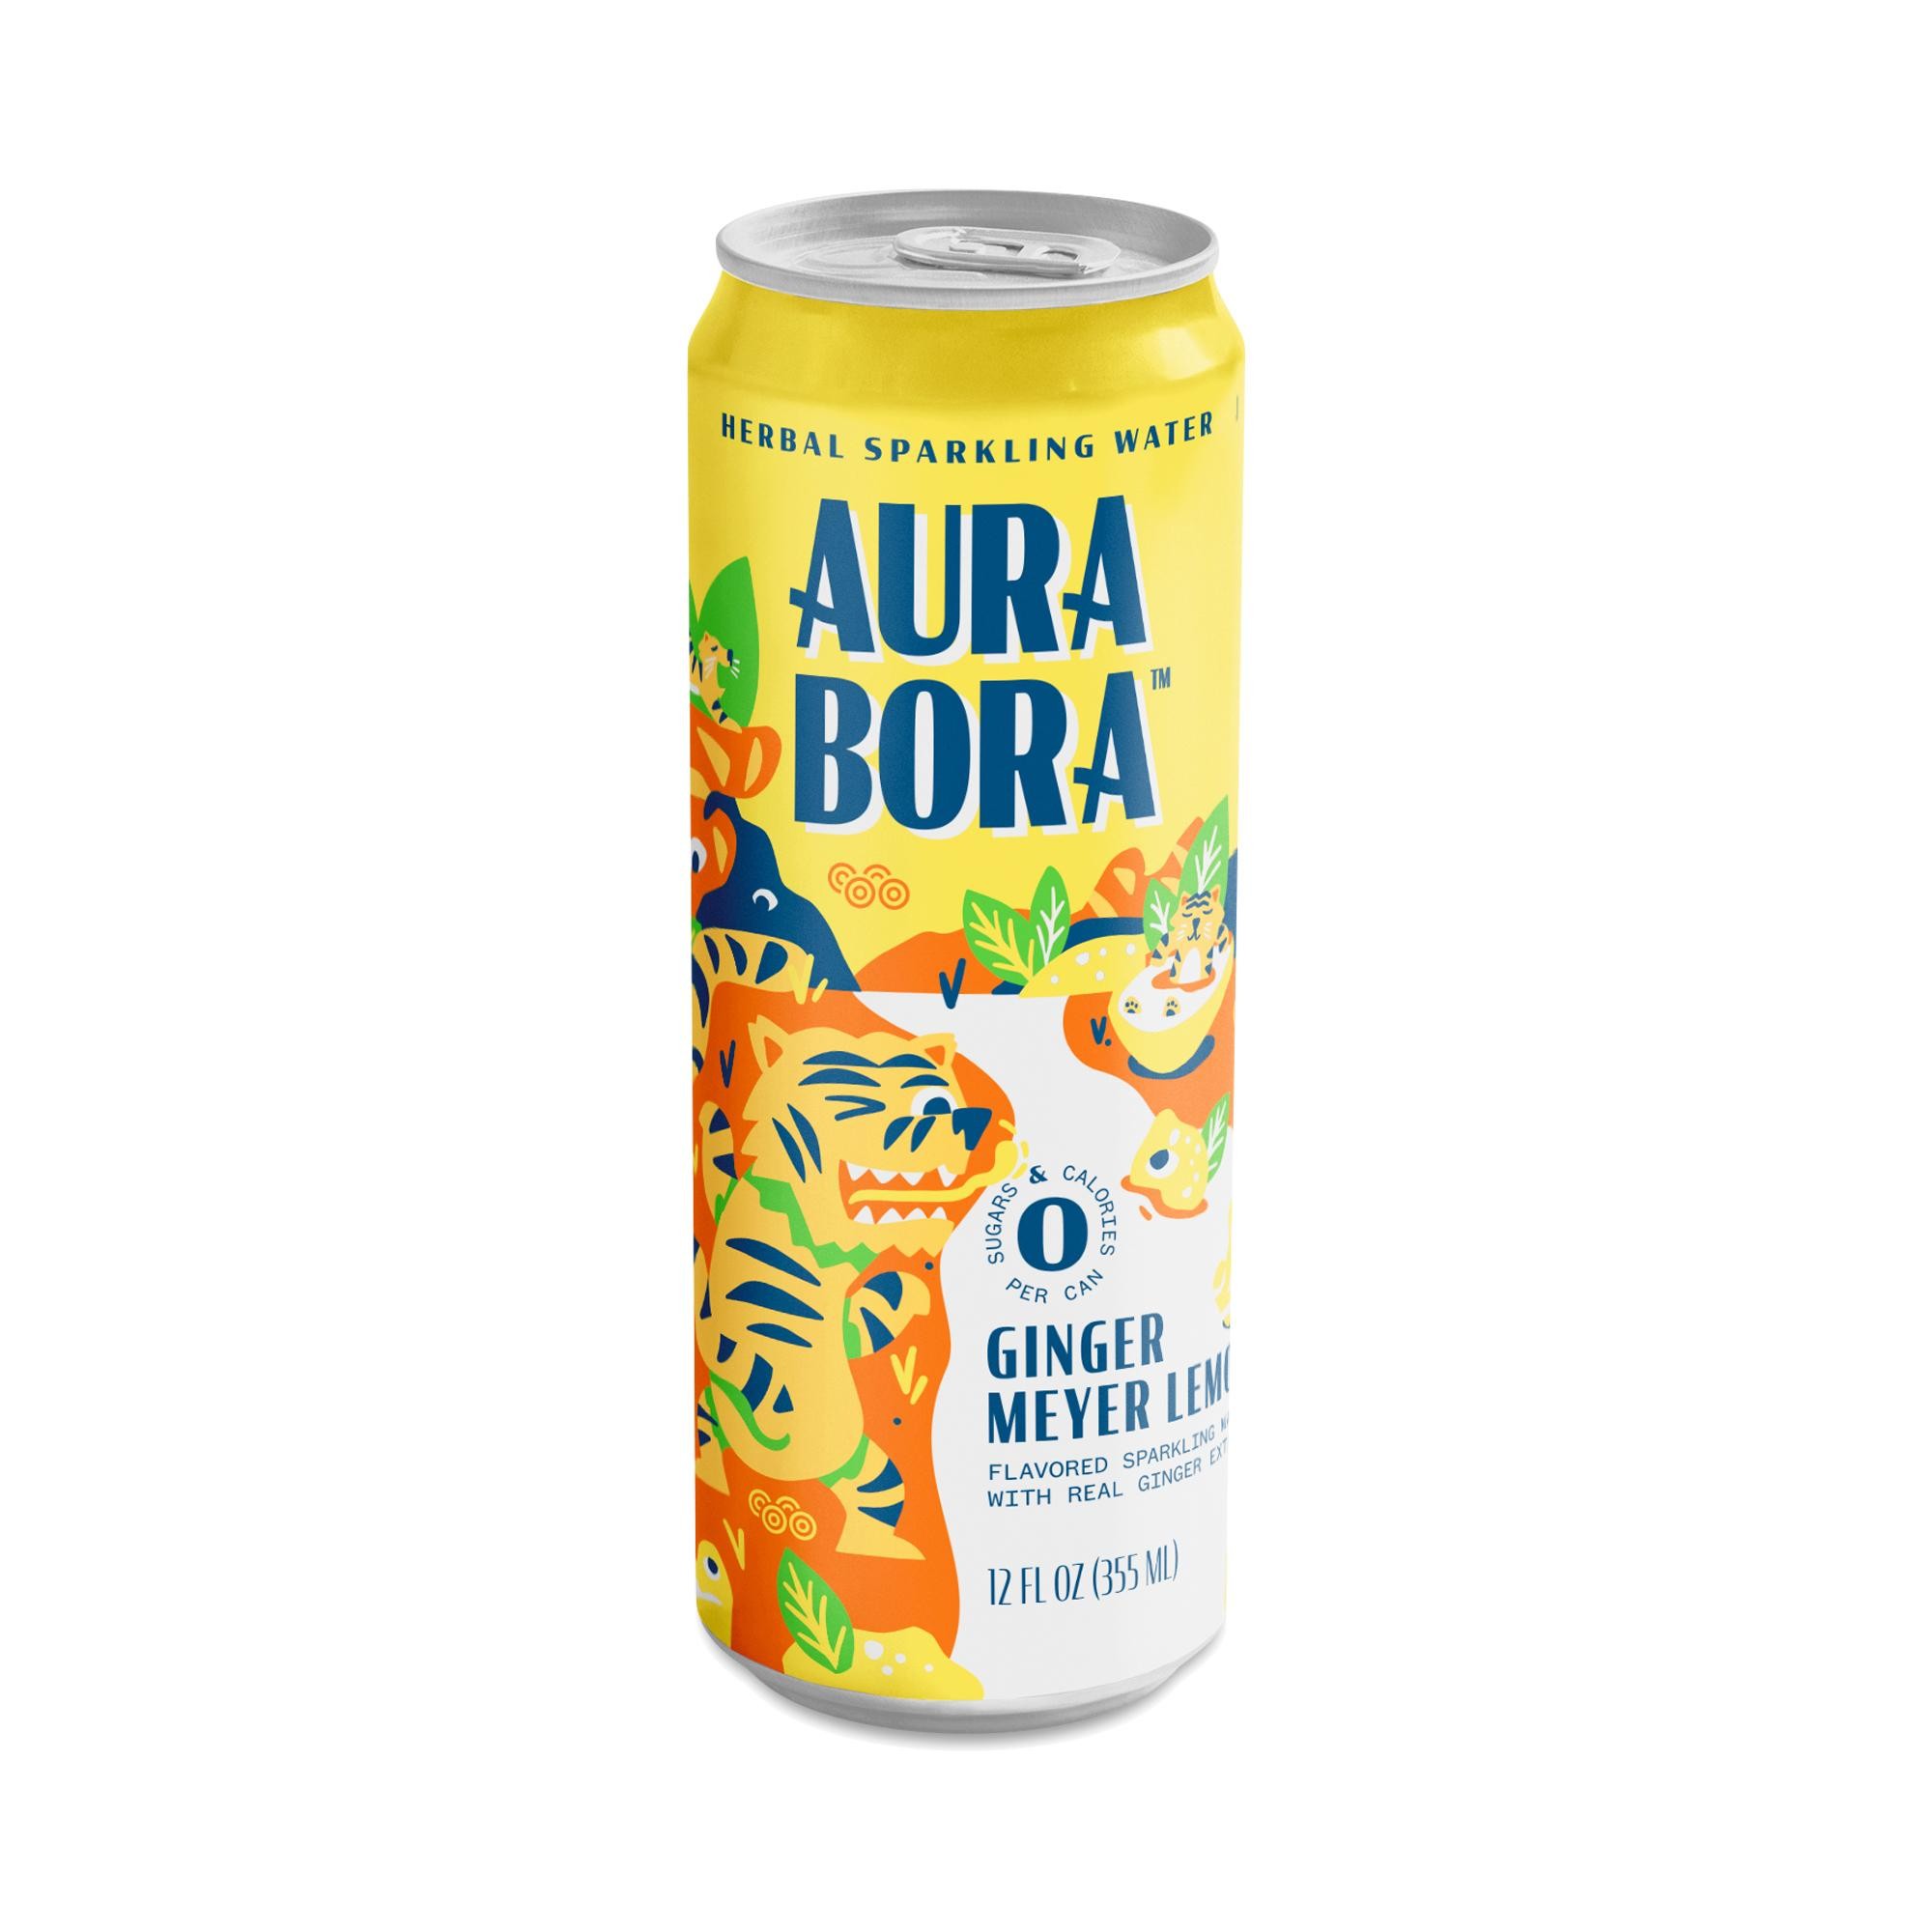 Aura Bora meyer lemon